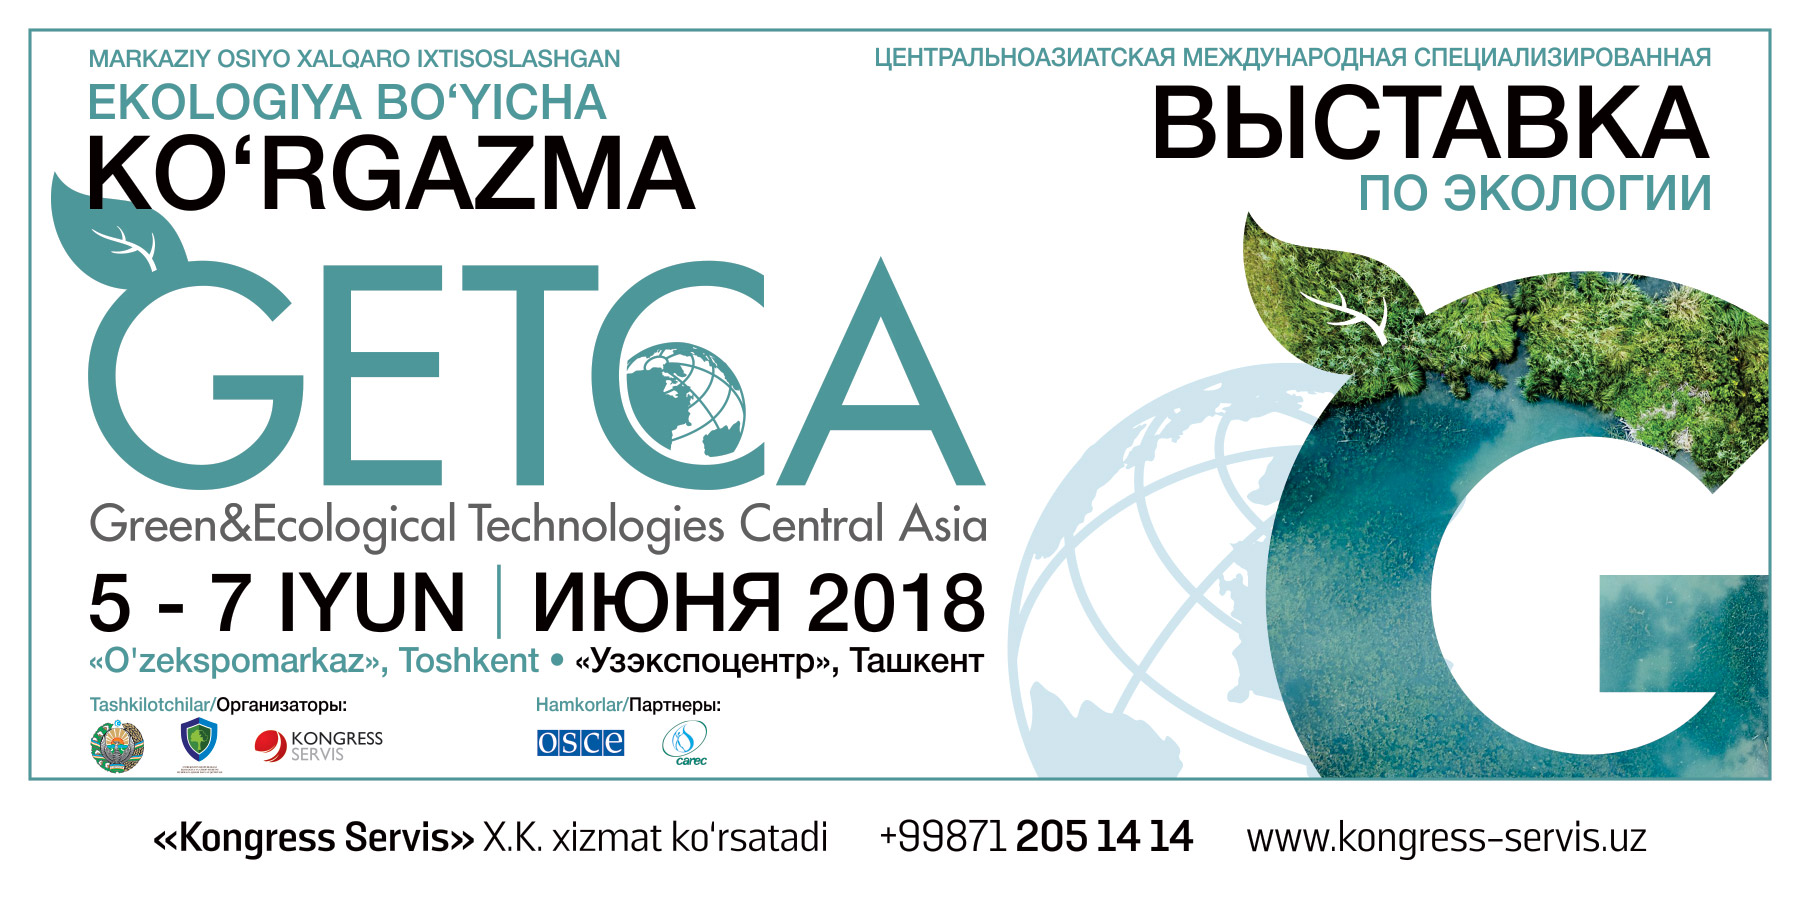 В рамках ЦАМЭФ 2018 в Ташкенте пройдет первая специализированная выставка по зеленым технологиям